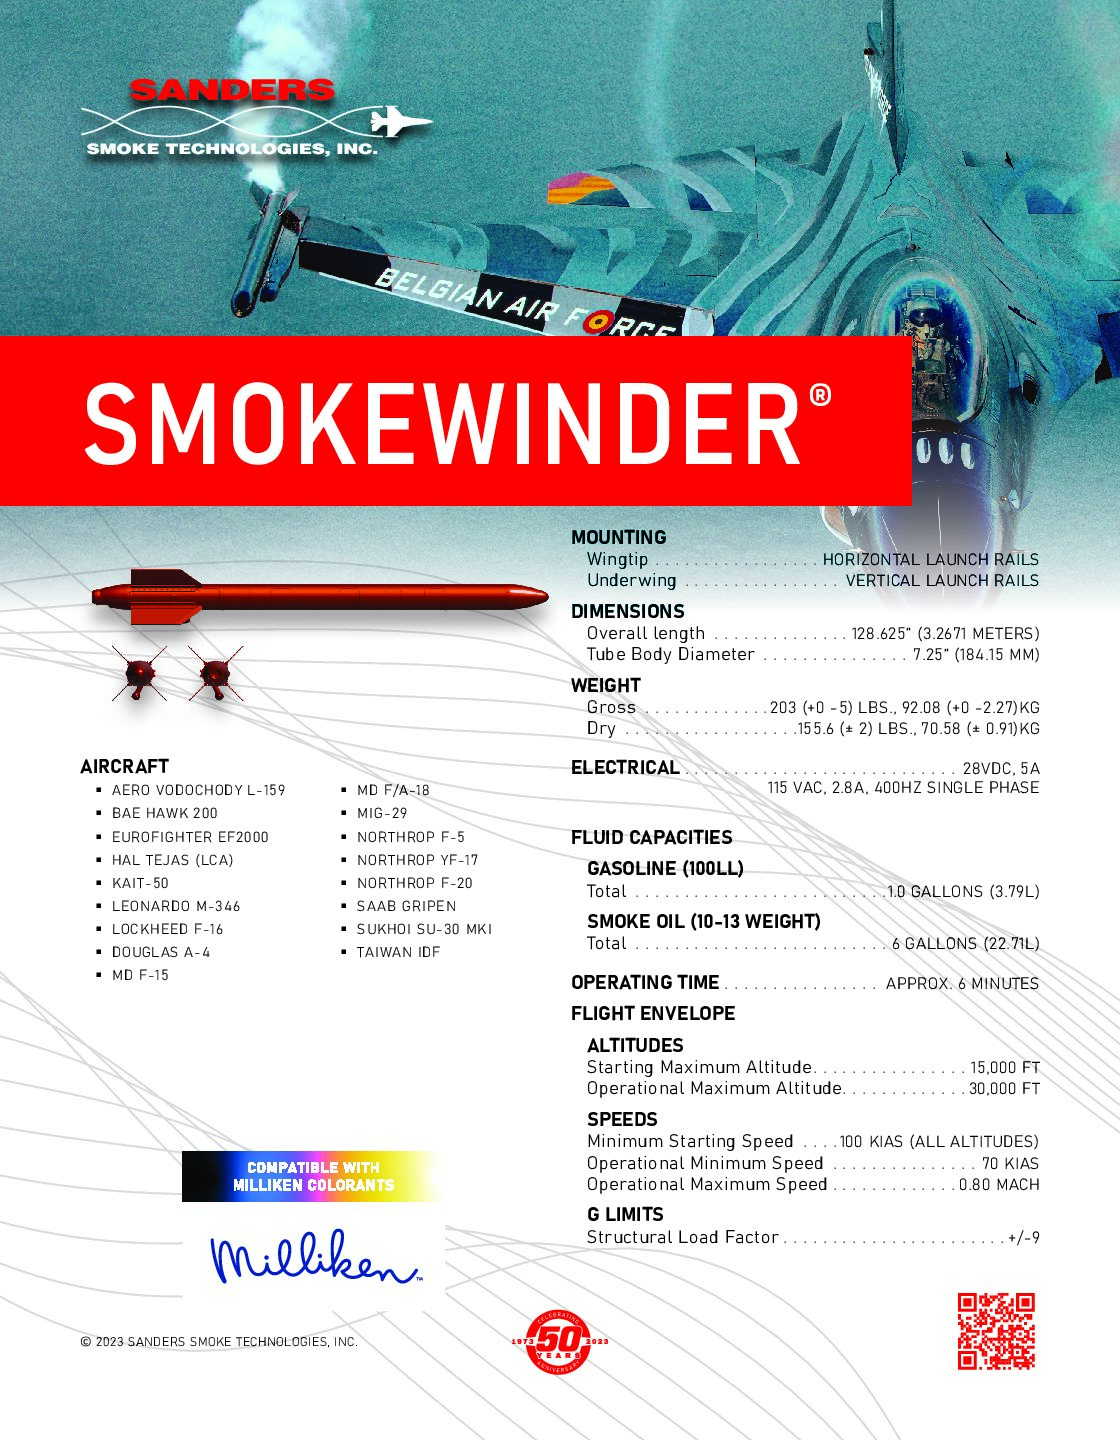 Smokewinder Brochure